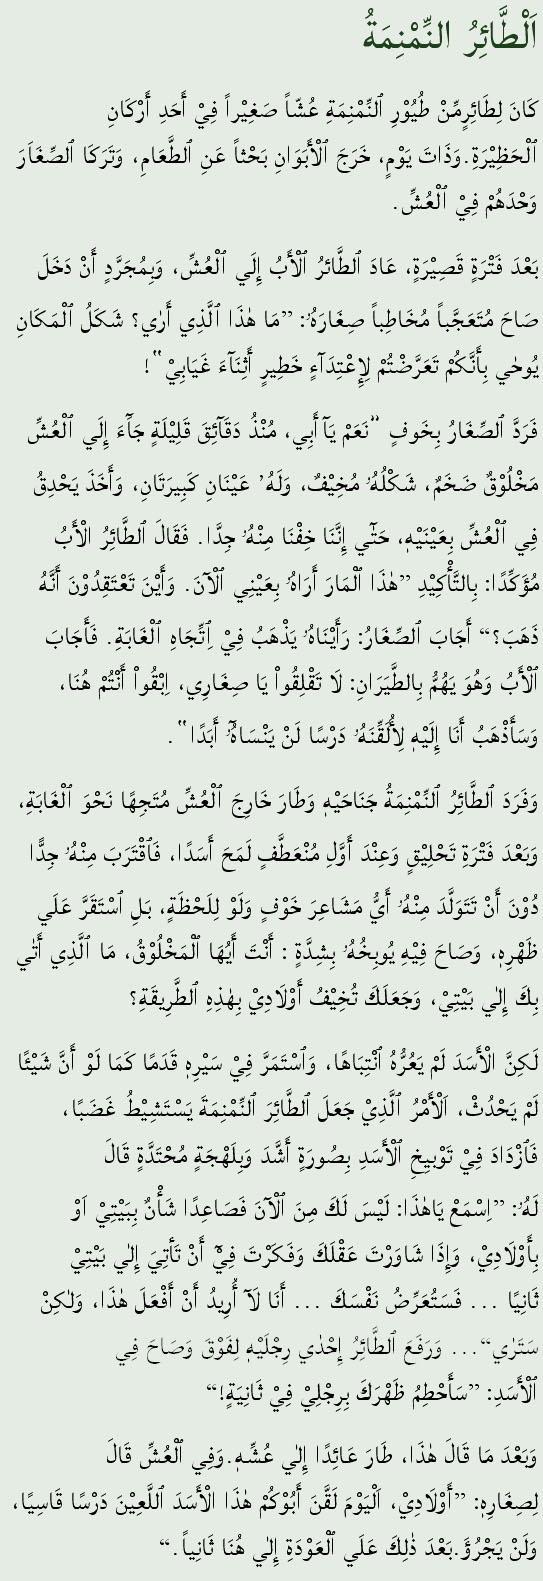 Arabic Translation in original Script